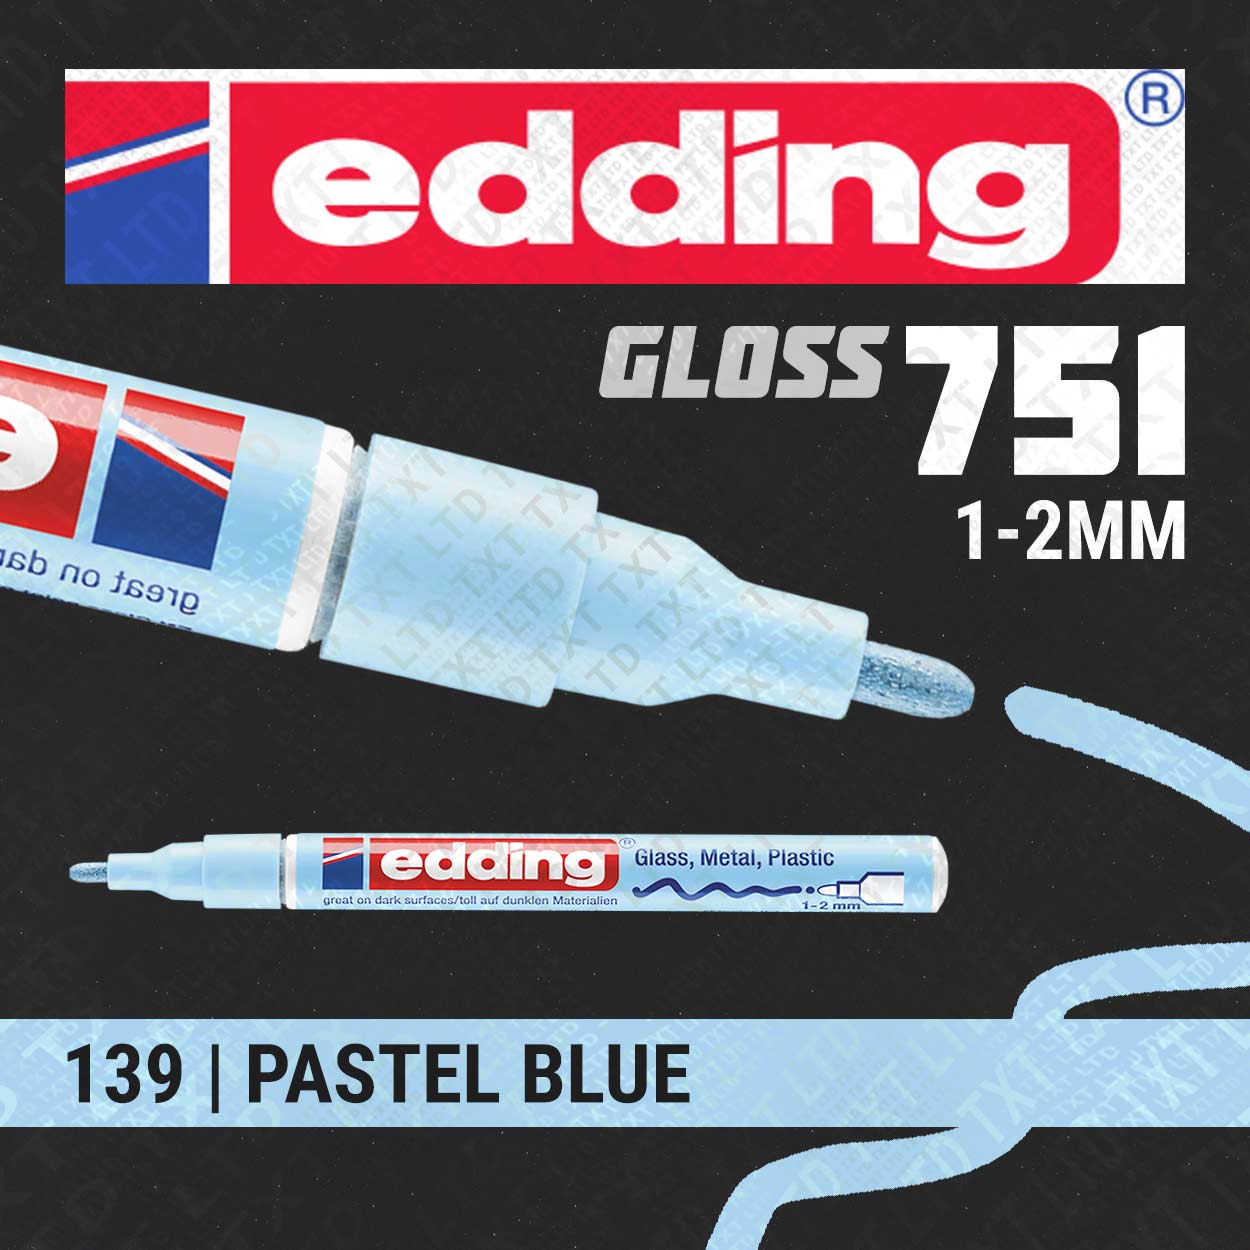 edding 751 Gloss Paint Marker